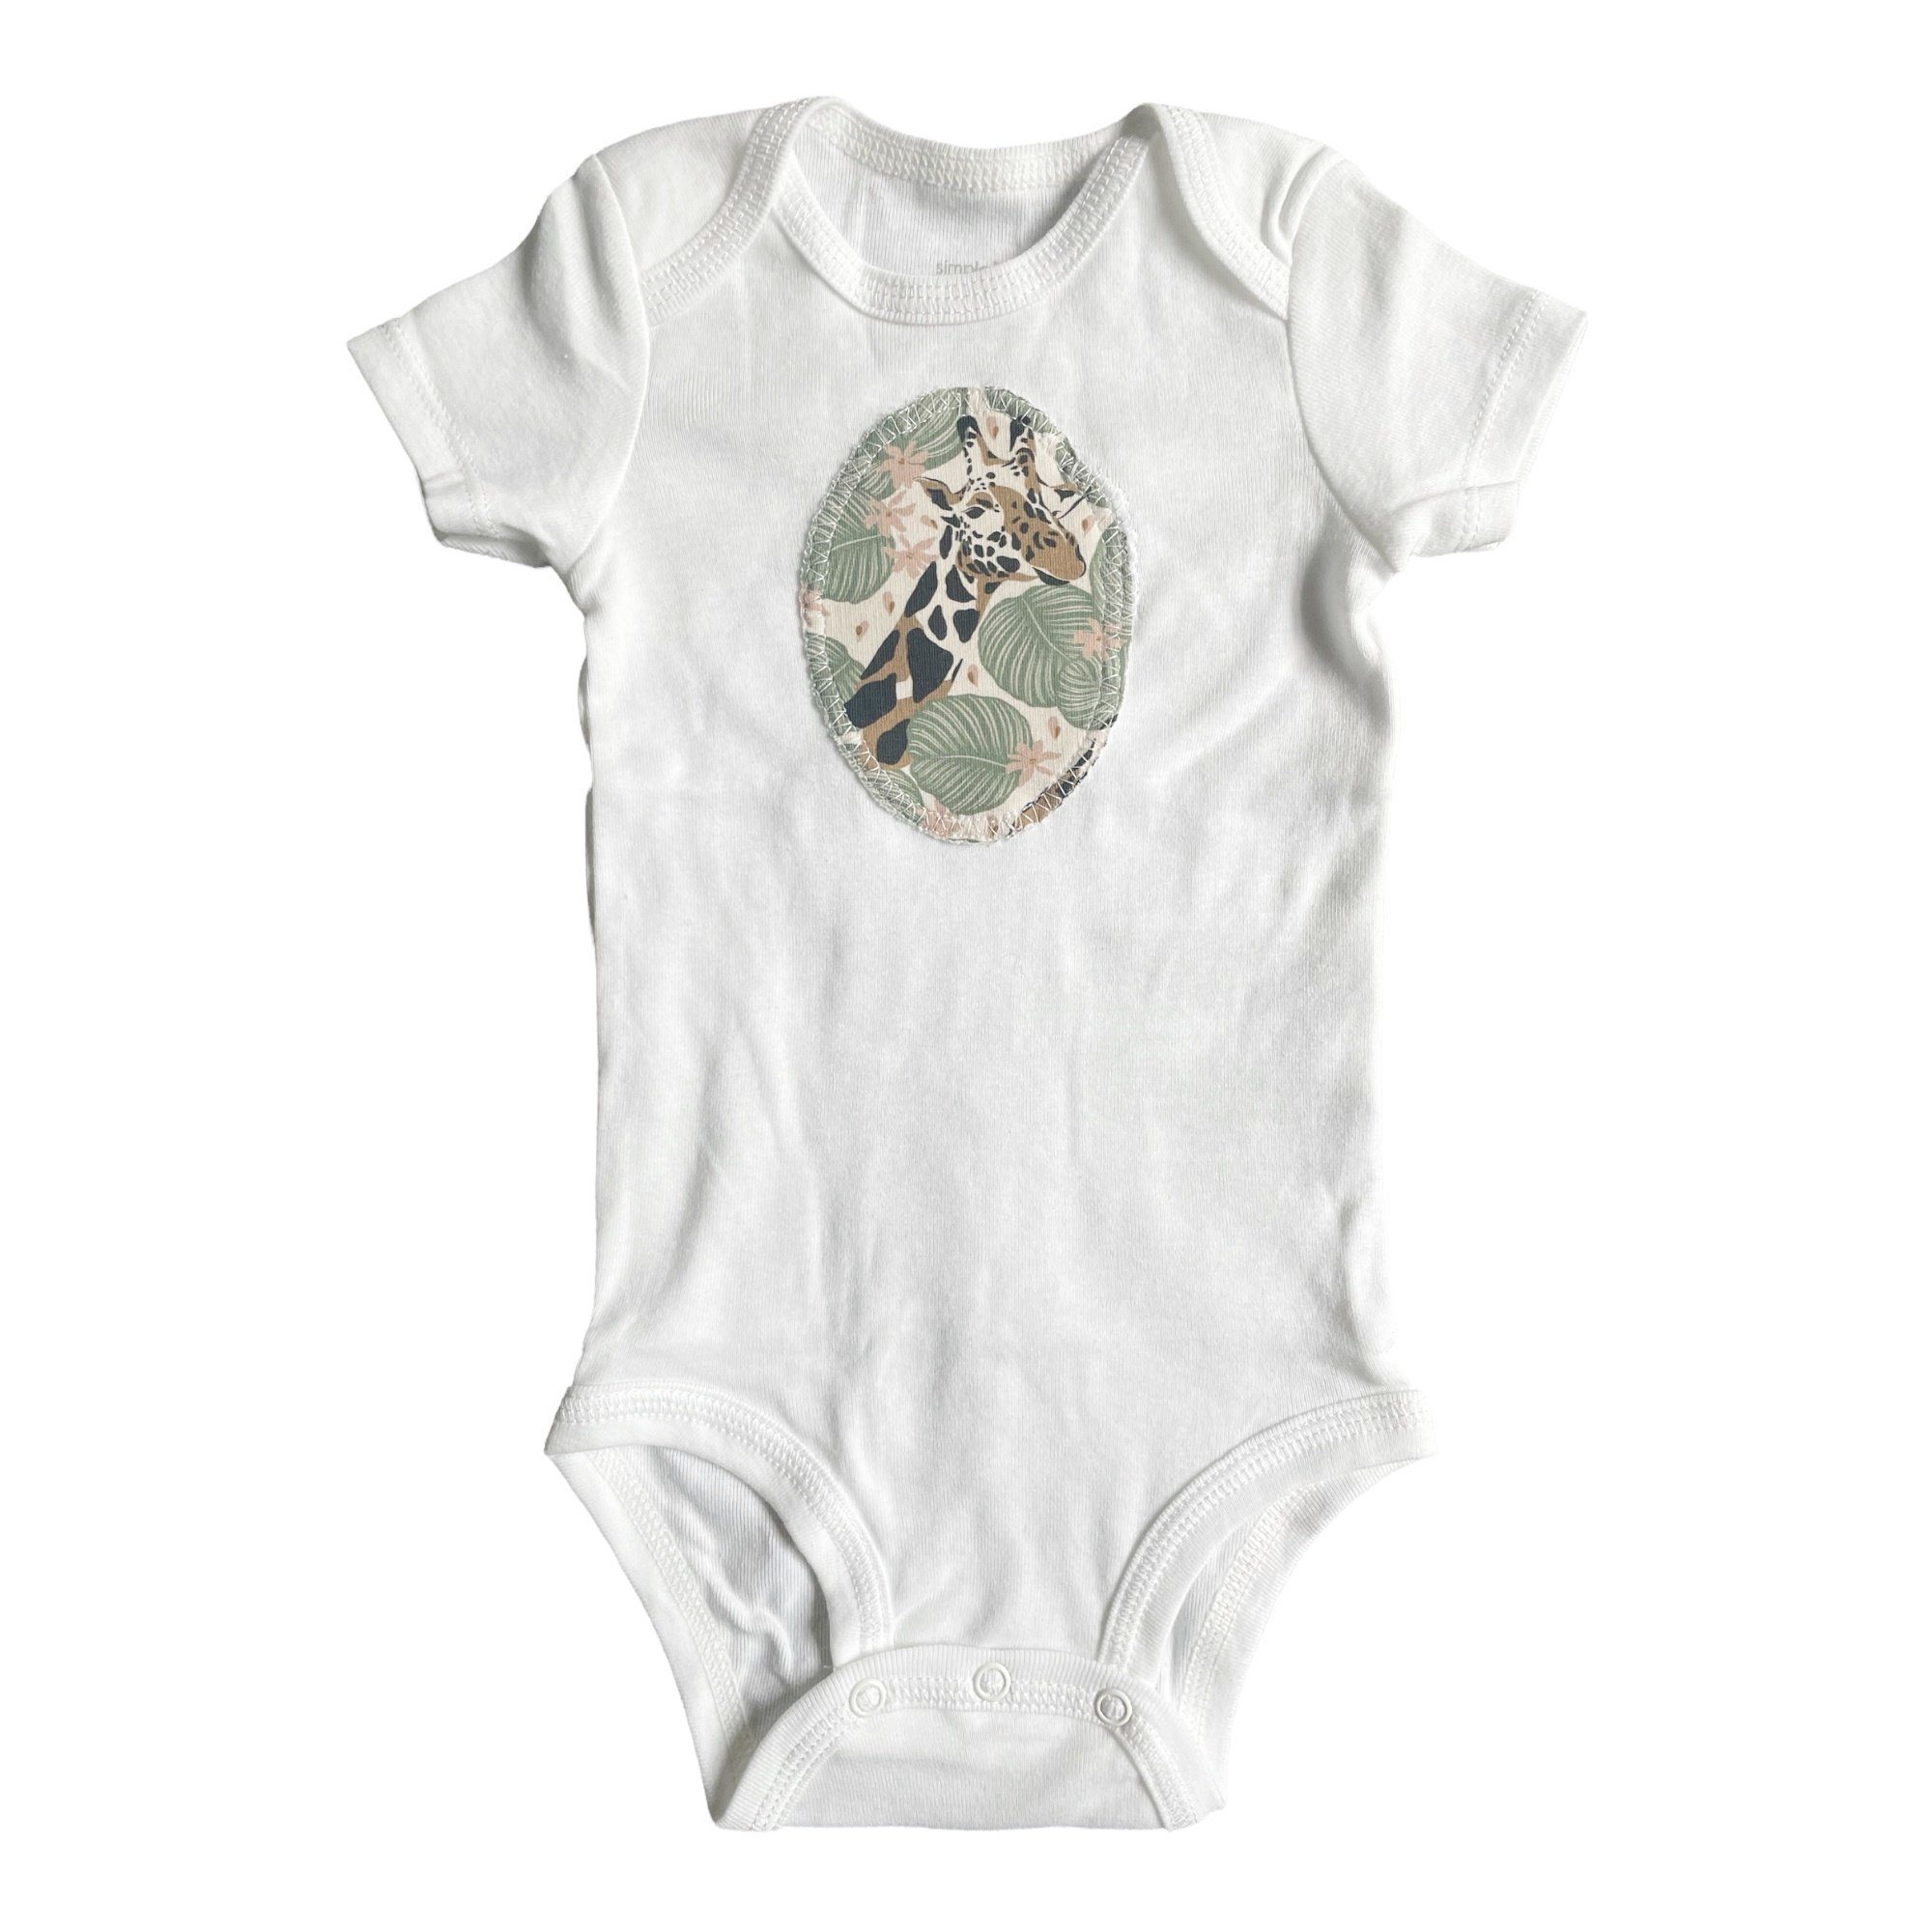 niedlichem Set Baby (2 Kinder- Body Design teilig) "Giraffe" Shorts grün/beige kennydoo & mit